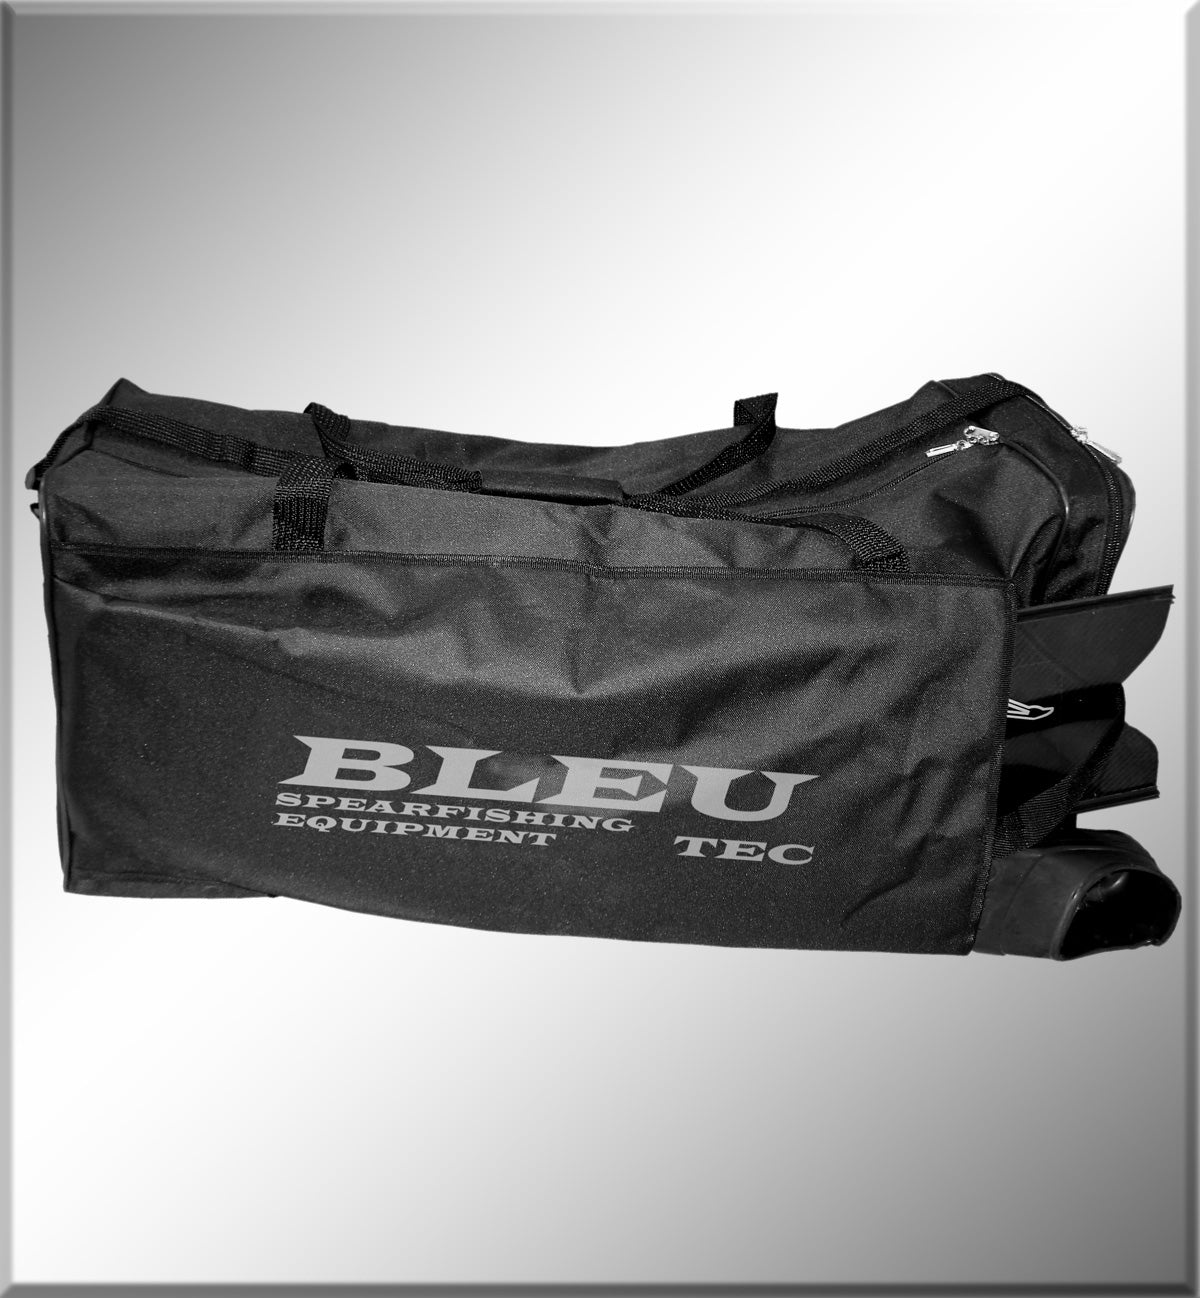 BleuTec Cordura Large Equipment Bag